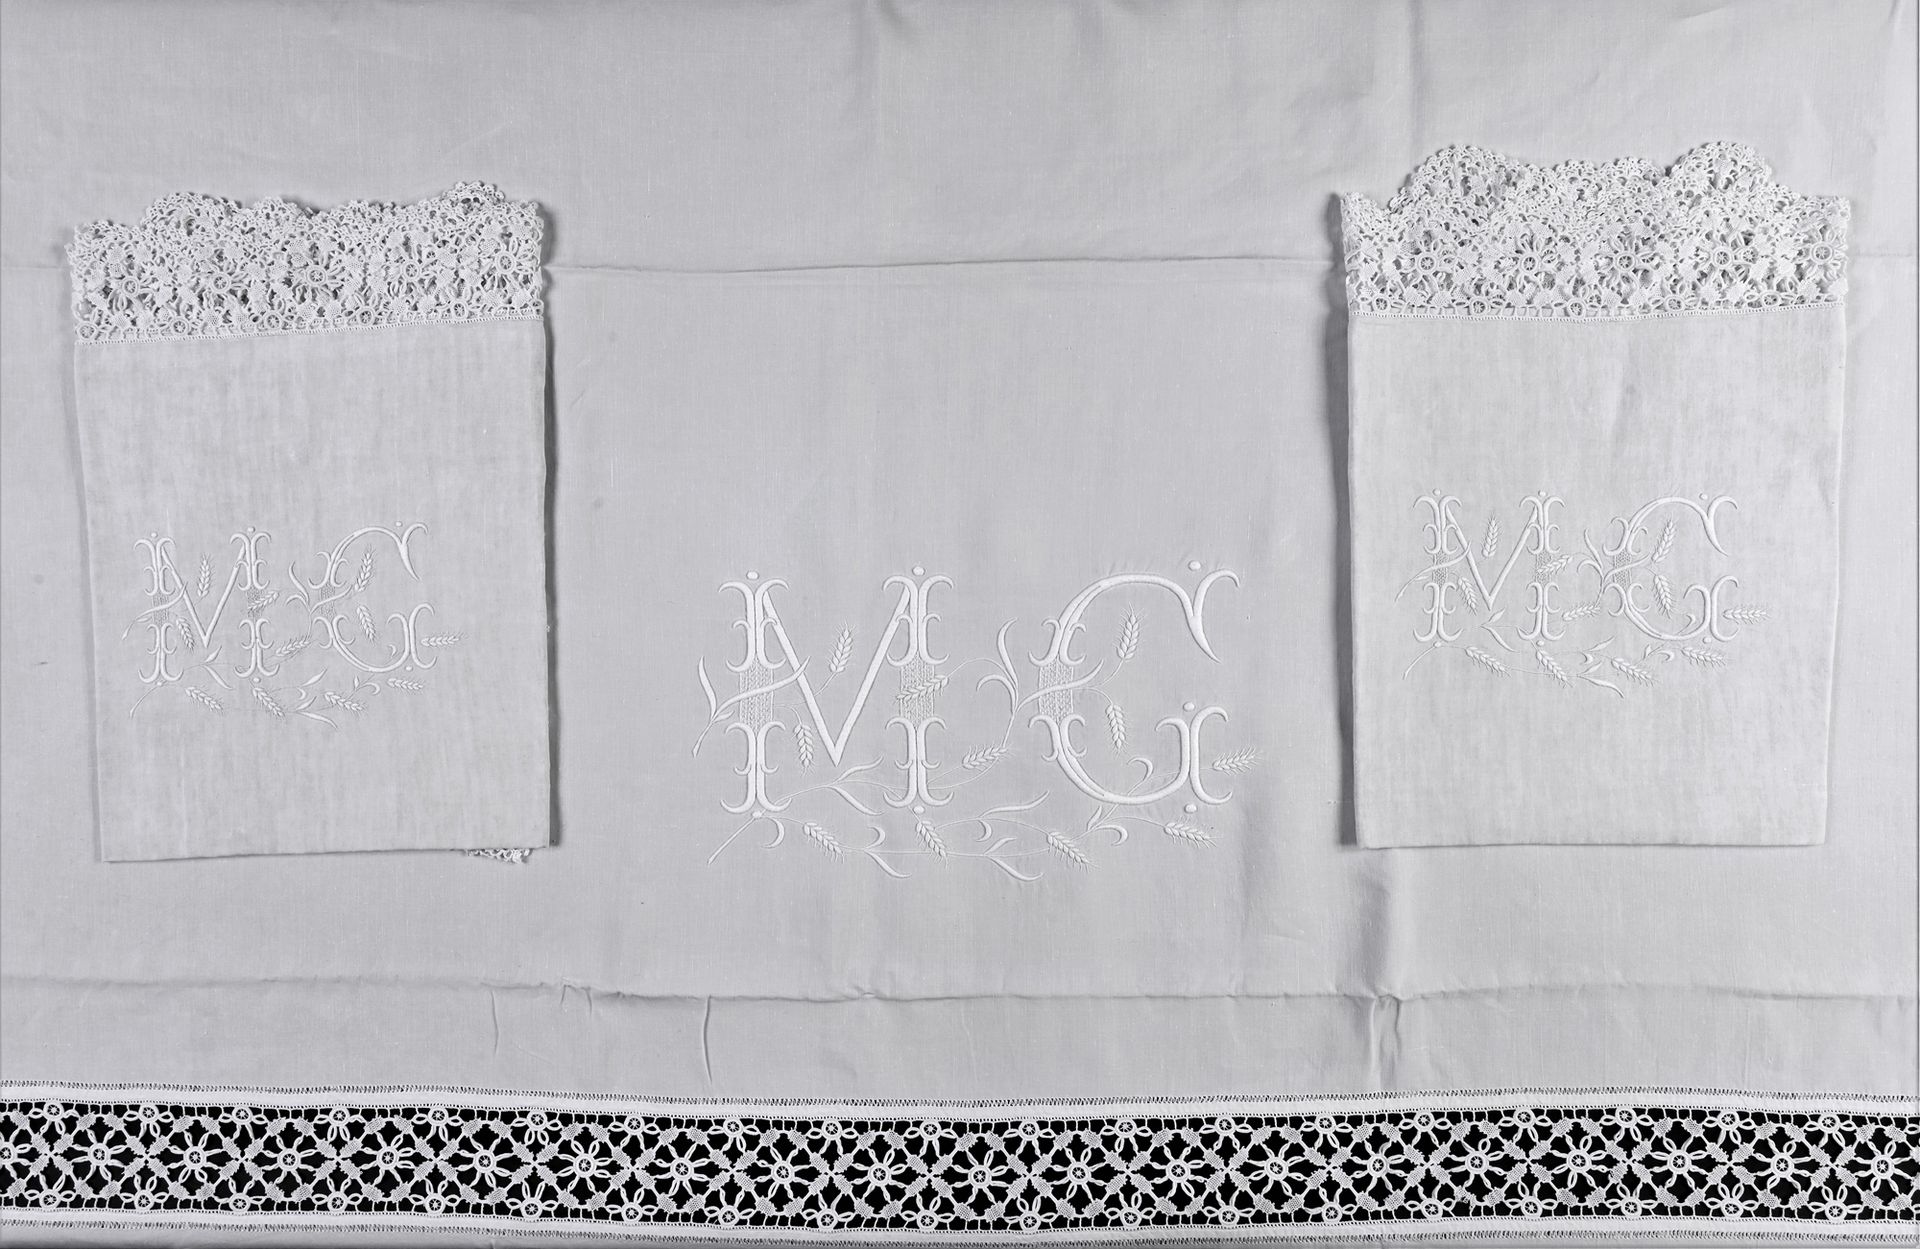 Null 大型床单套装及其枕套，20世纪初。
美丽的亚麻布，长而宽的床单，有一个翻盖，上面装饰着entre-deux和针状花边，翻盖的边缘有非常精细的钩织的小花&hellip;